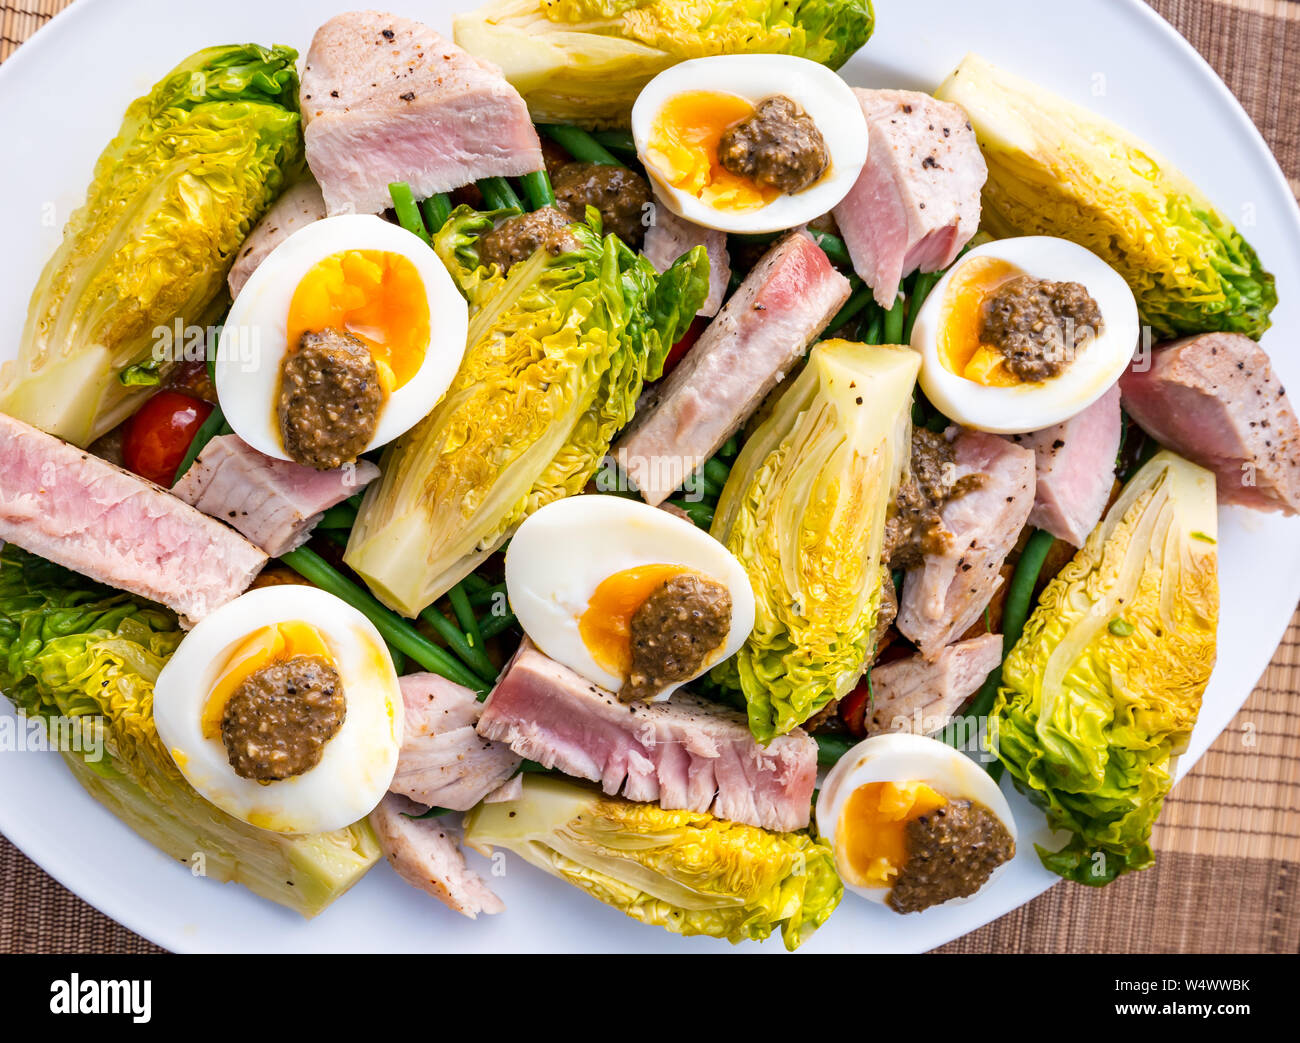 Version von Salat Nicoise auf weiße Platte. Hart gekochte Eier und Olivenöl Dressing, Baby gem Salat, gekochten Kartoffeln & Thunfisch Steak Slices Stockfoto